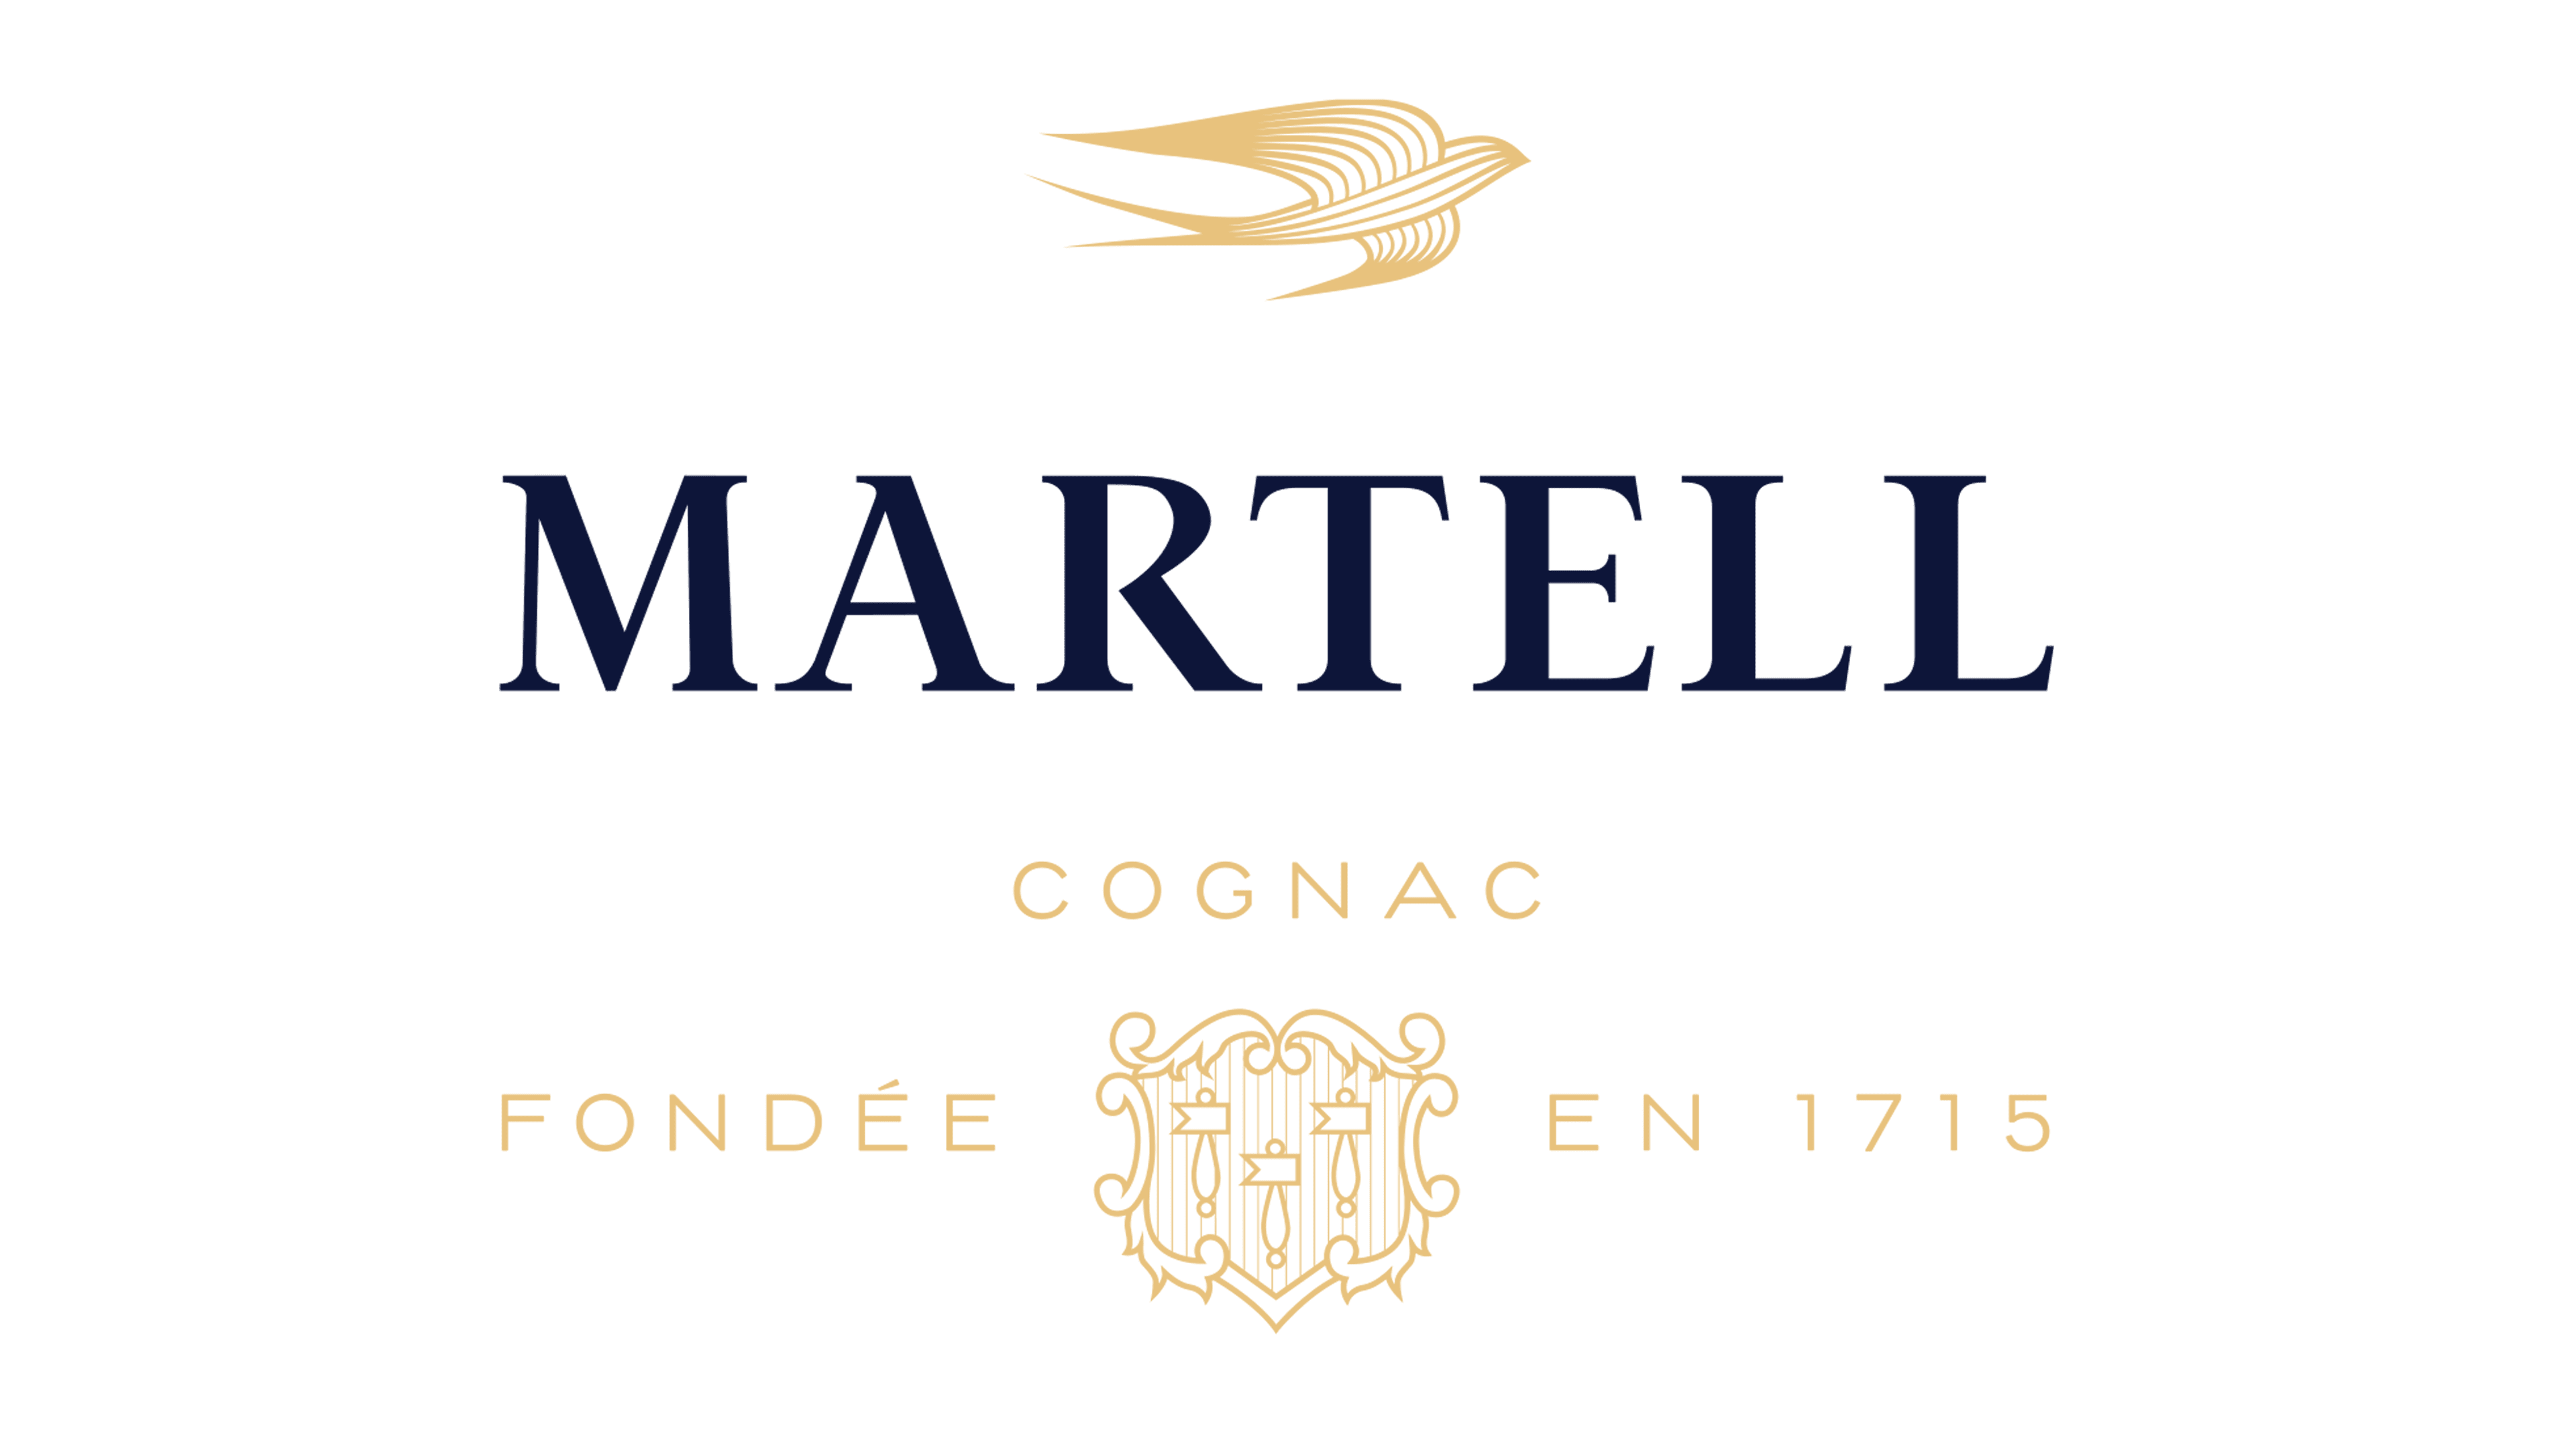 Martell V.S.